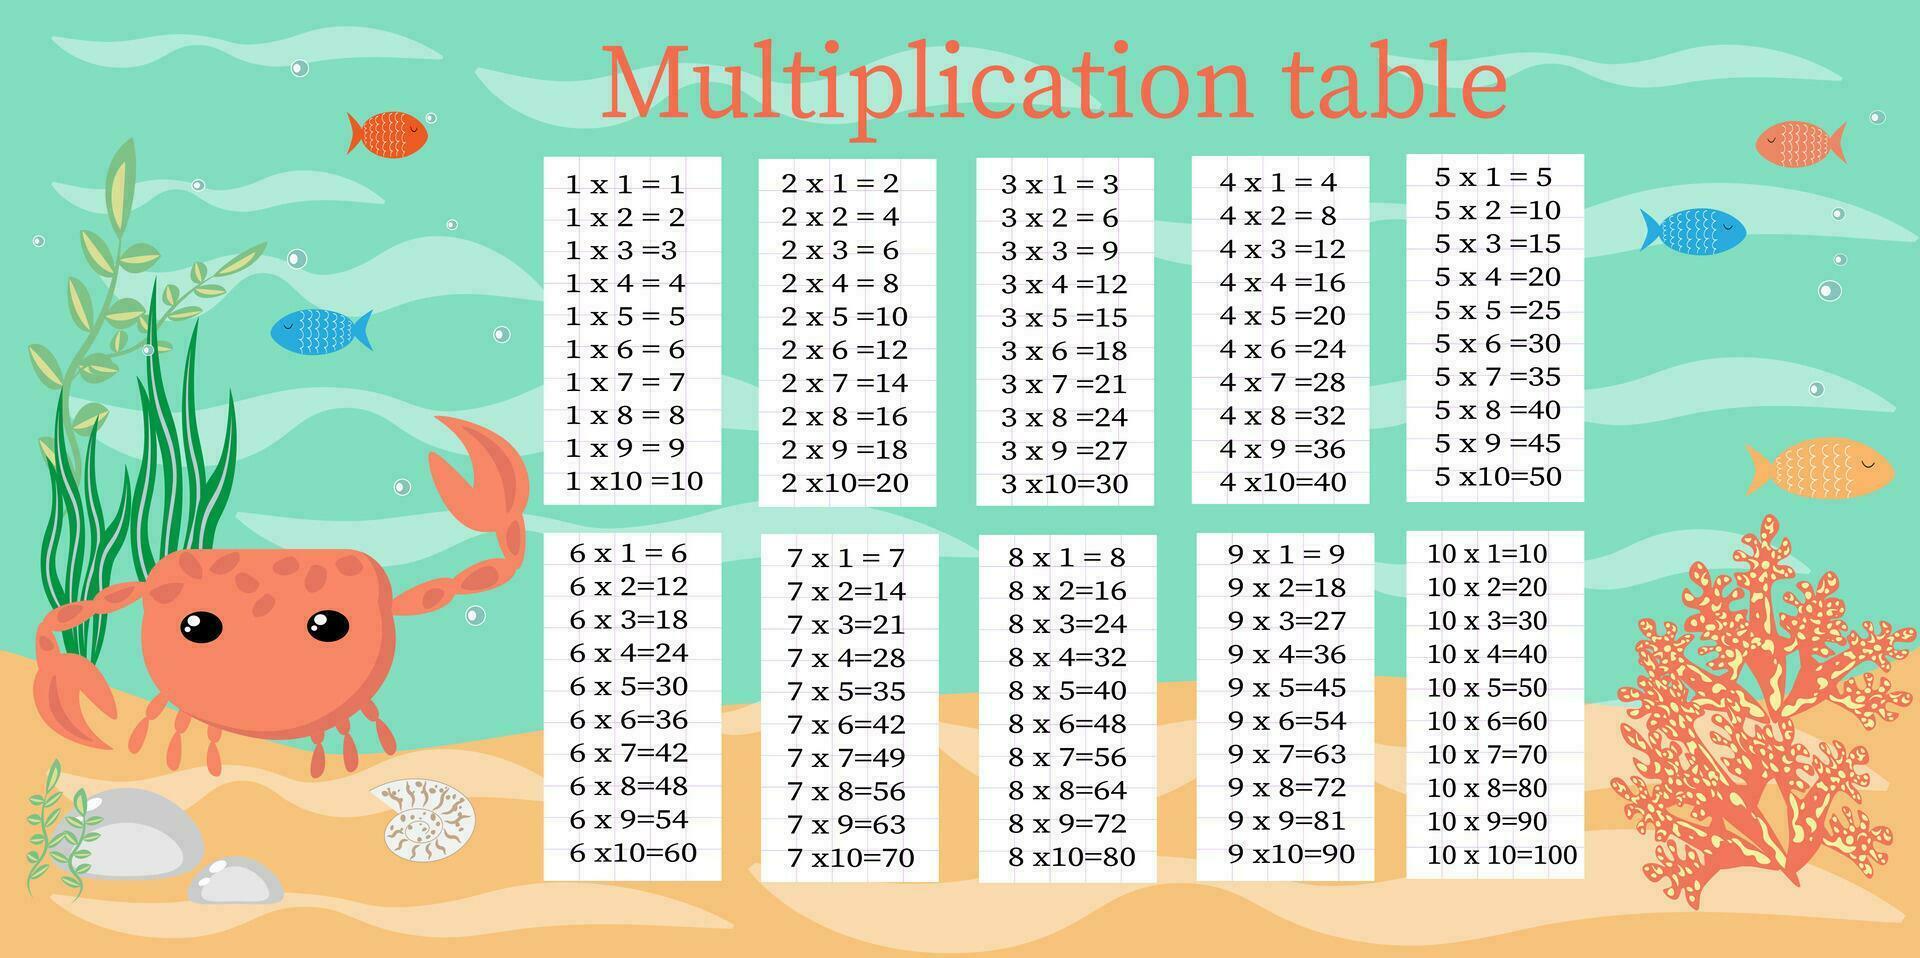 multiplicación mesa desde 1 a 10 vistoso dibujos animados multiplicación mesa vector para educación enseñando matemáticas. eps10